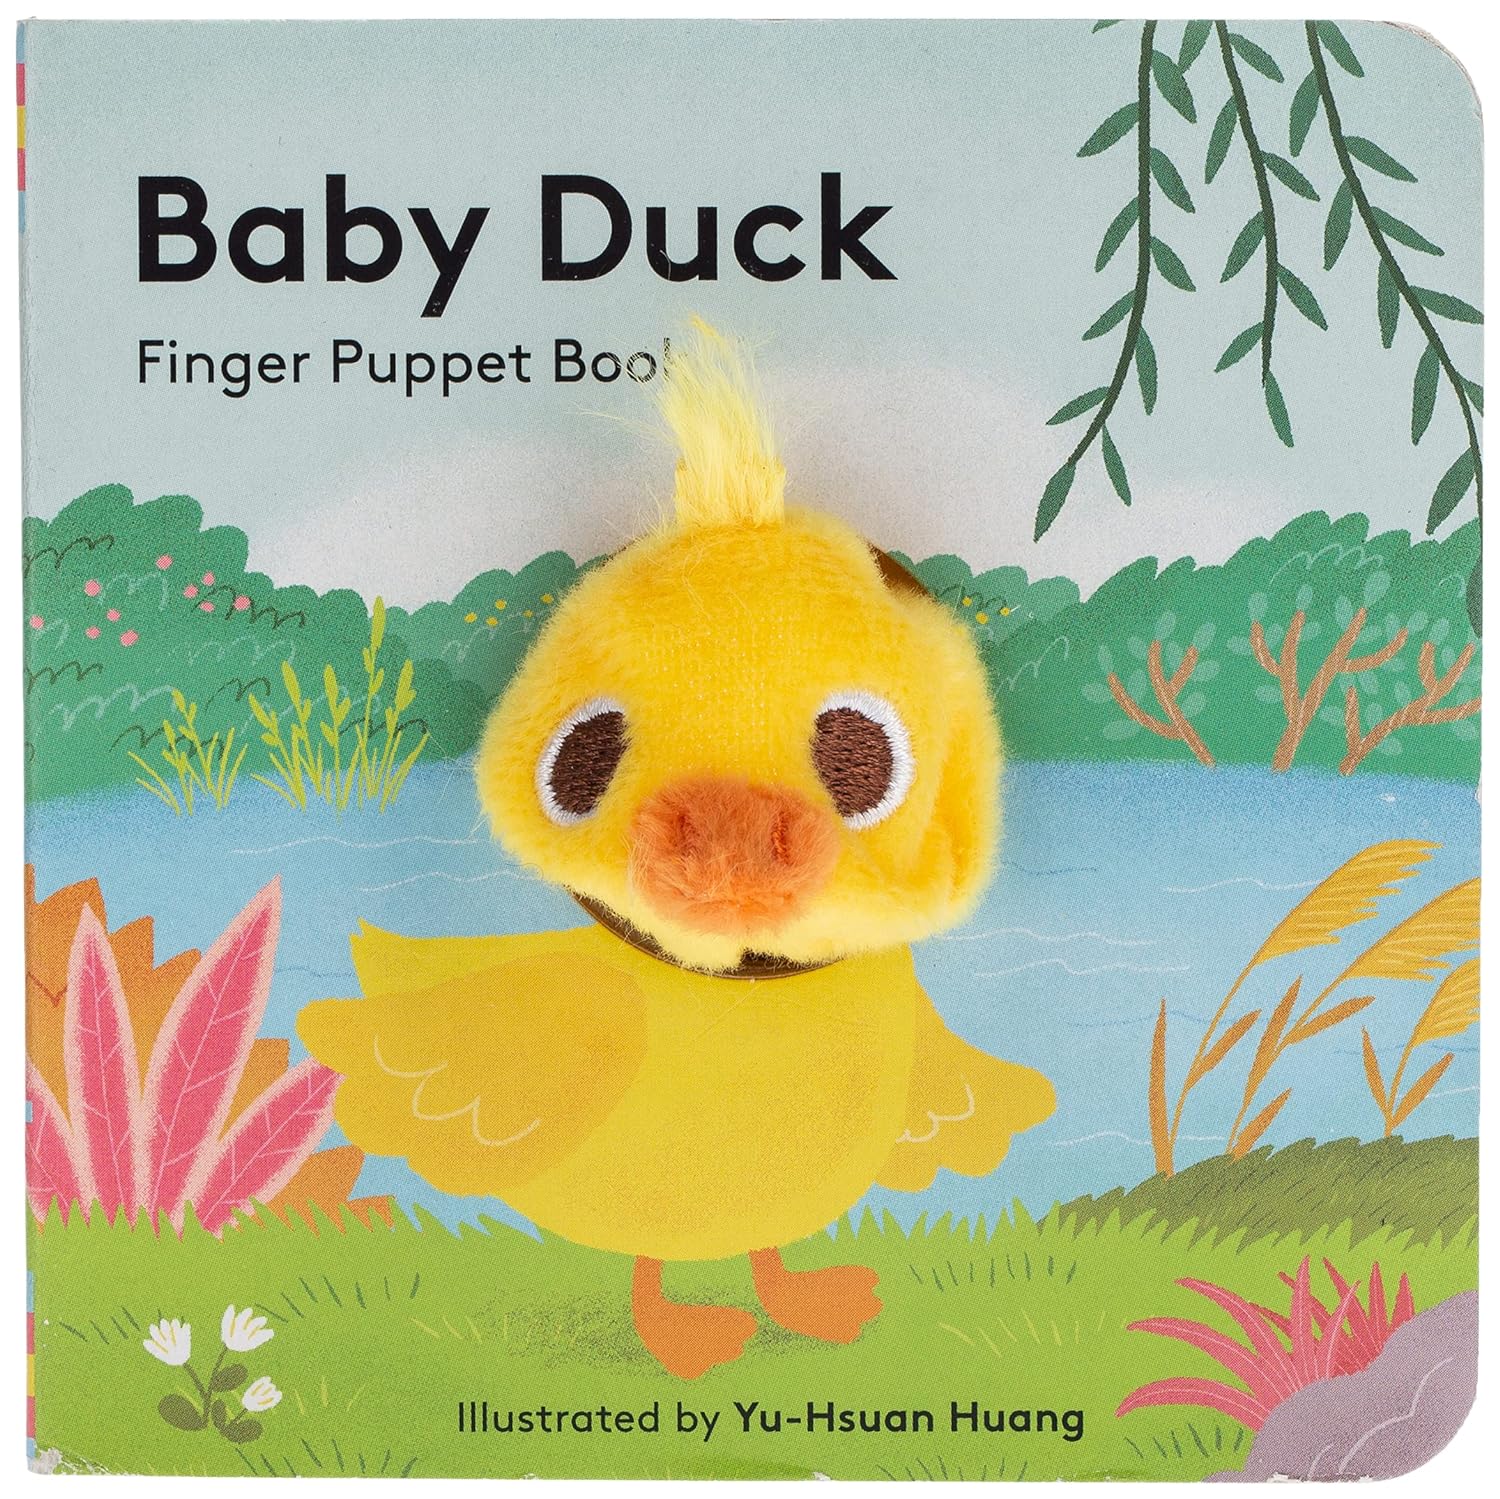 "Baby Duck" Finger Puppet Book